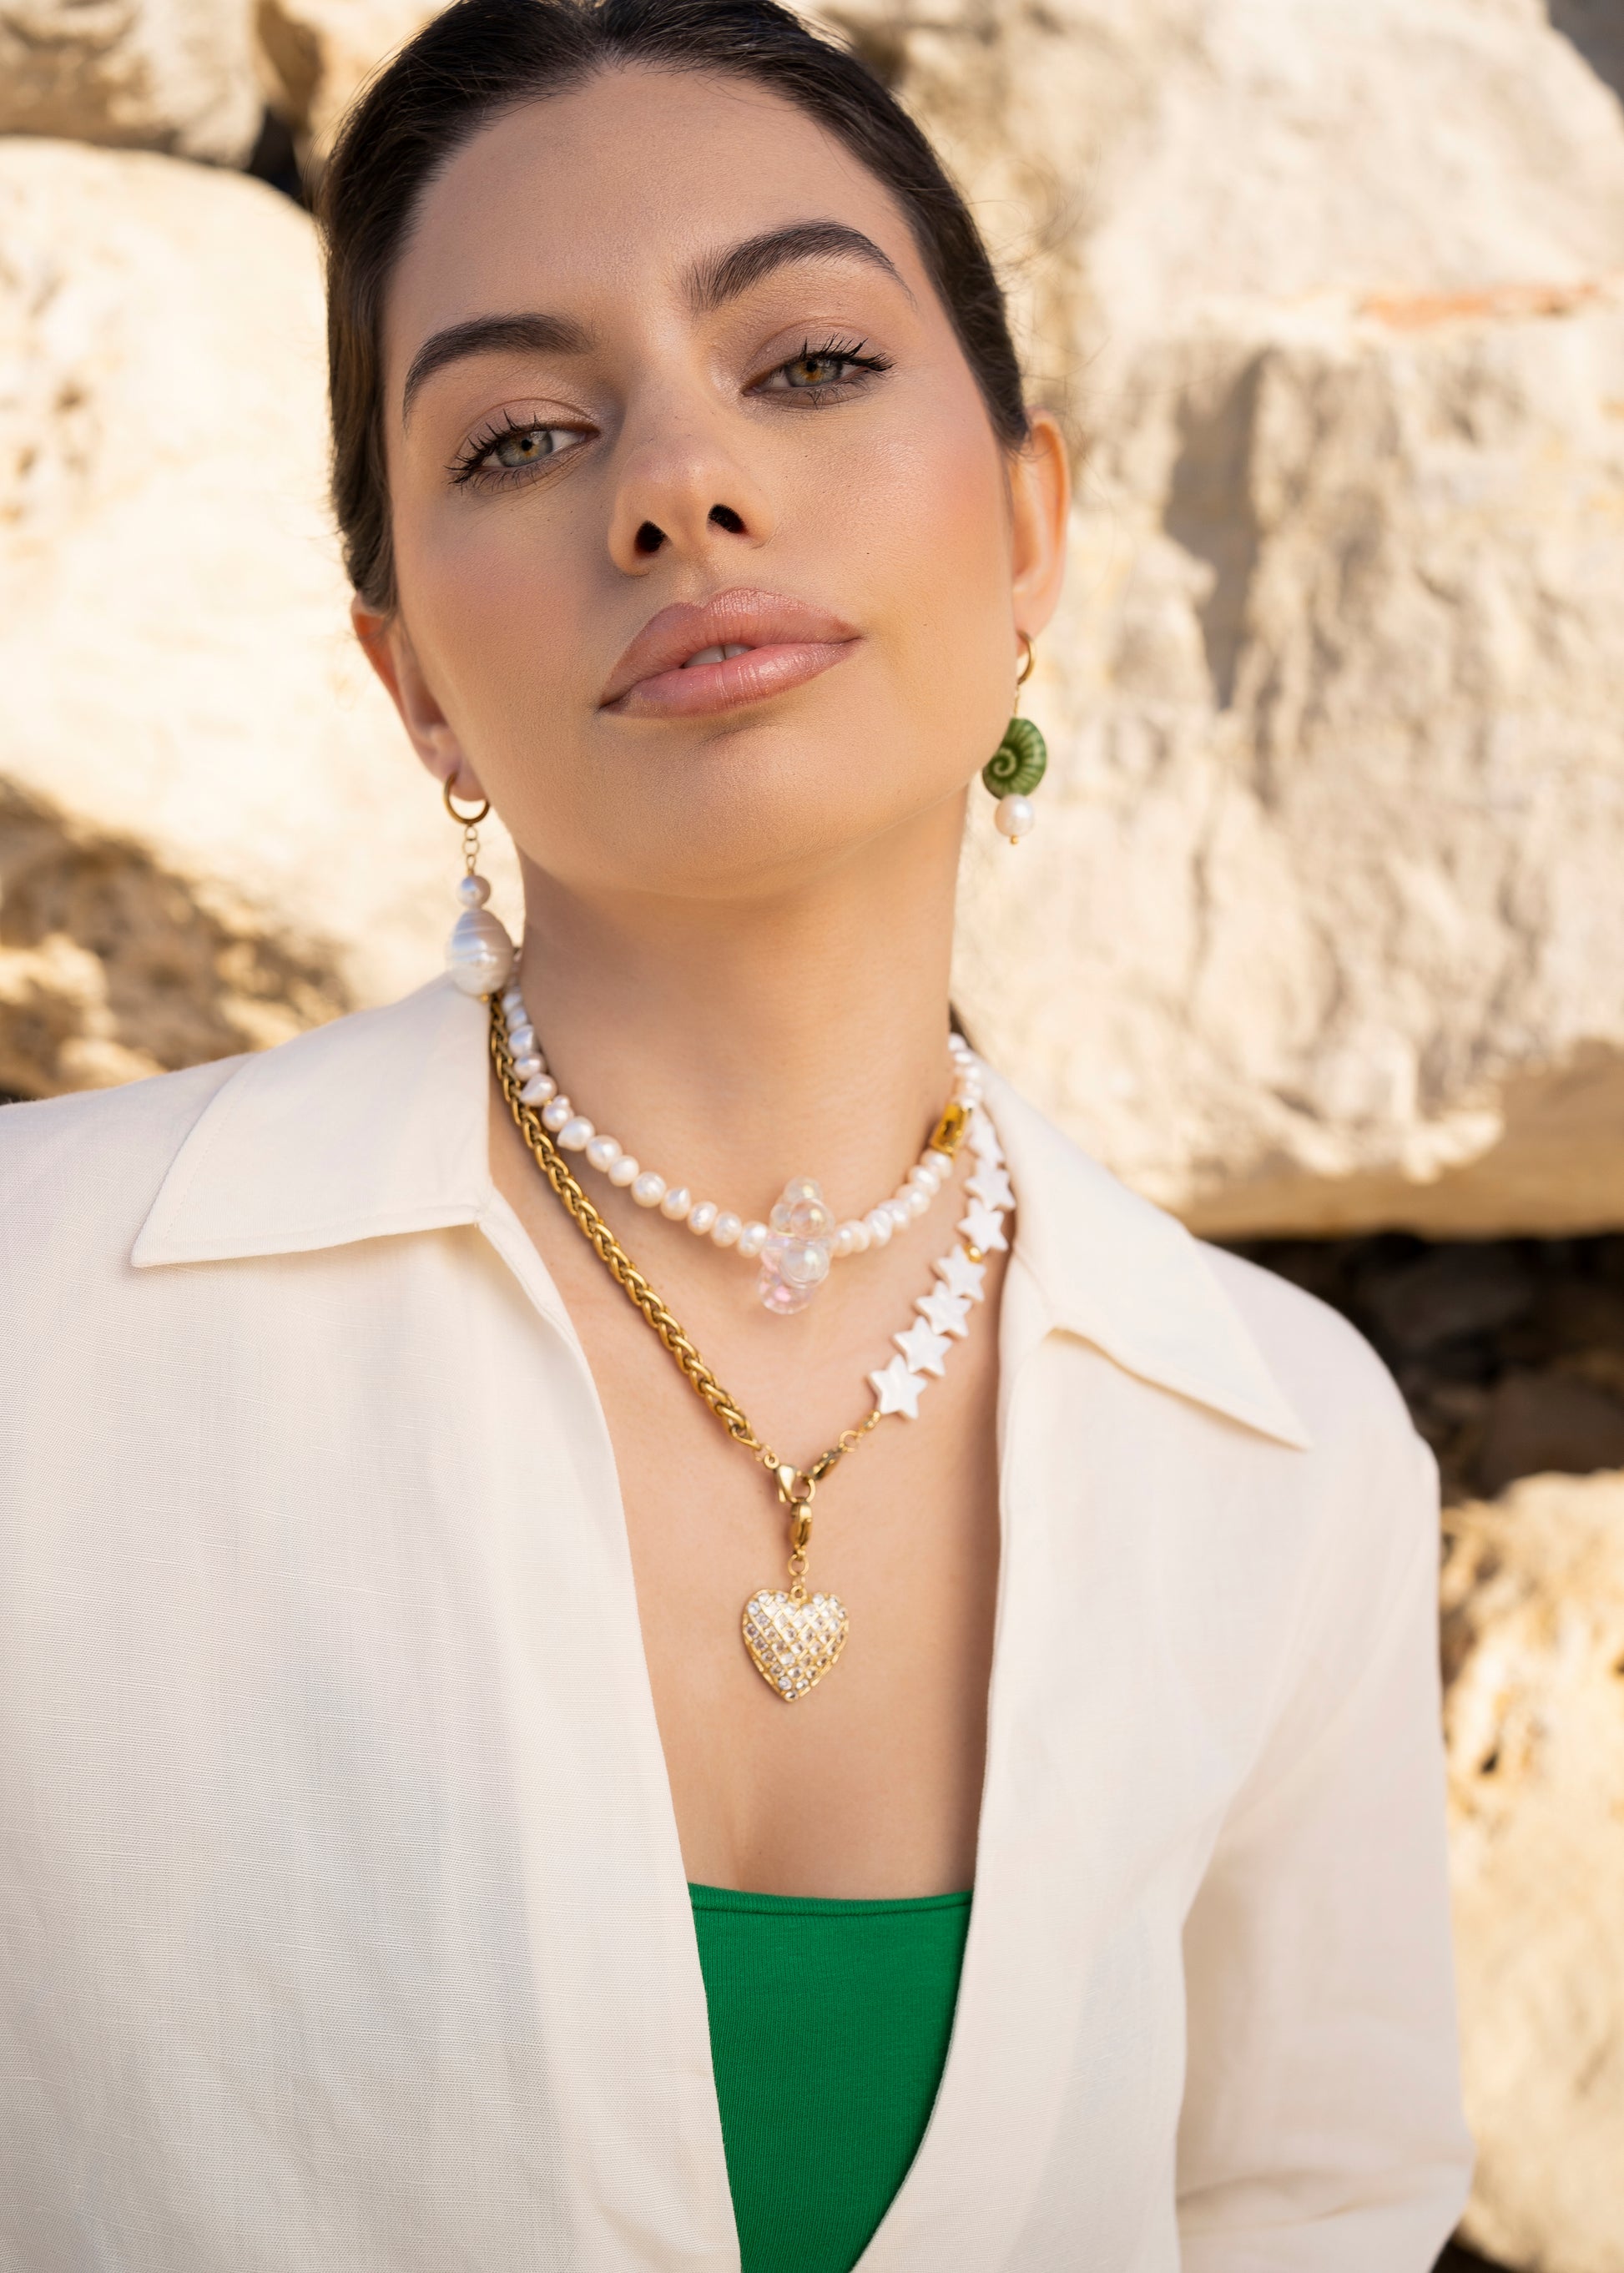 Perla en pendiente, pendiente de perla, pendientes con perlas, joyas Lulás_Lulás, perlas y nácar